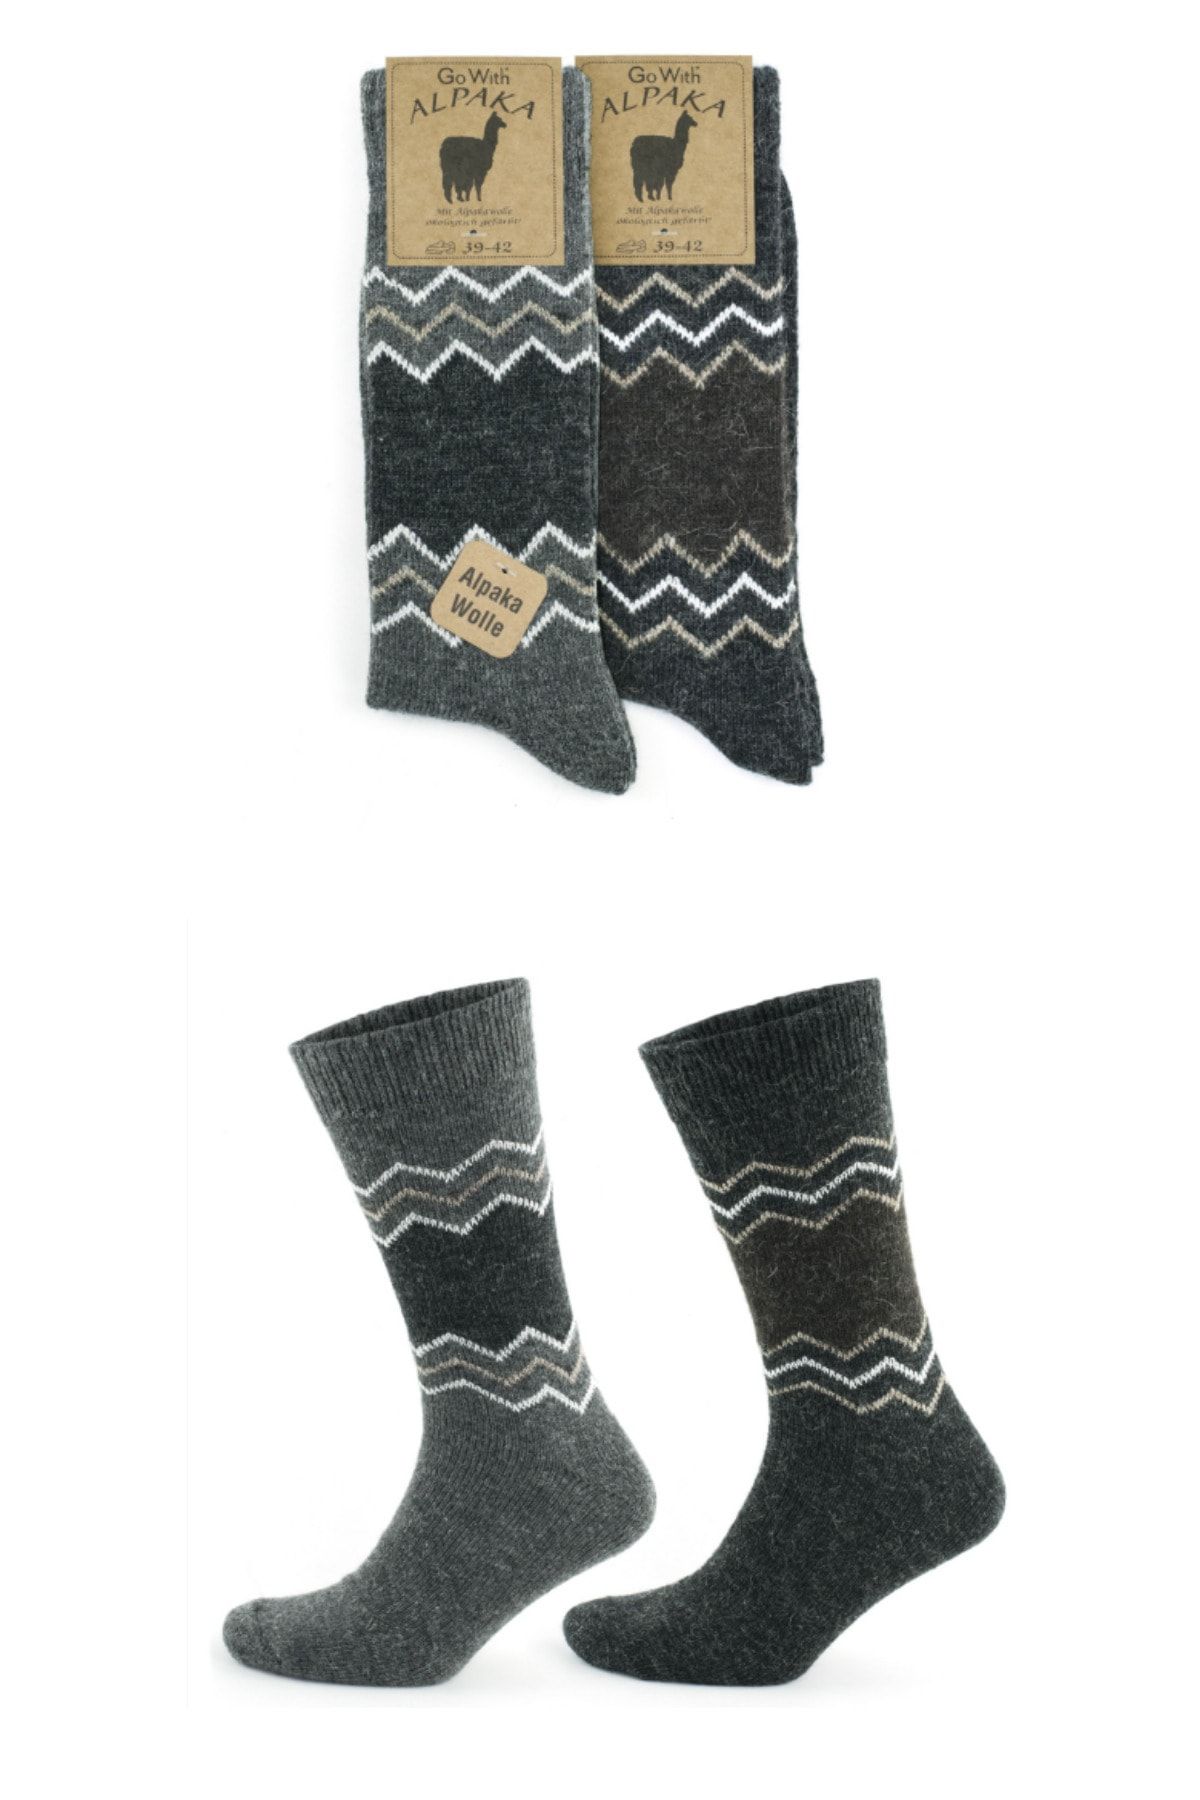 socksbox Alpaka Doğal Yün Termal Etkili Desenli Kışlık Çorap 2 Çift